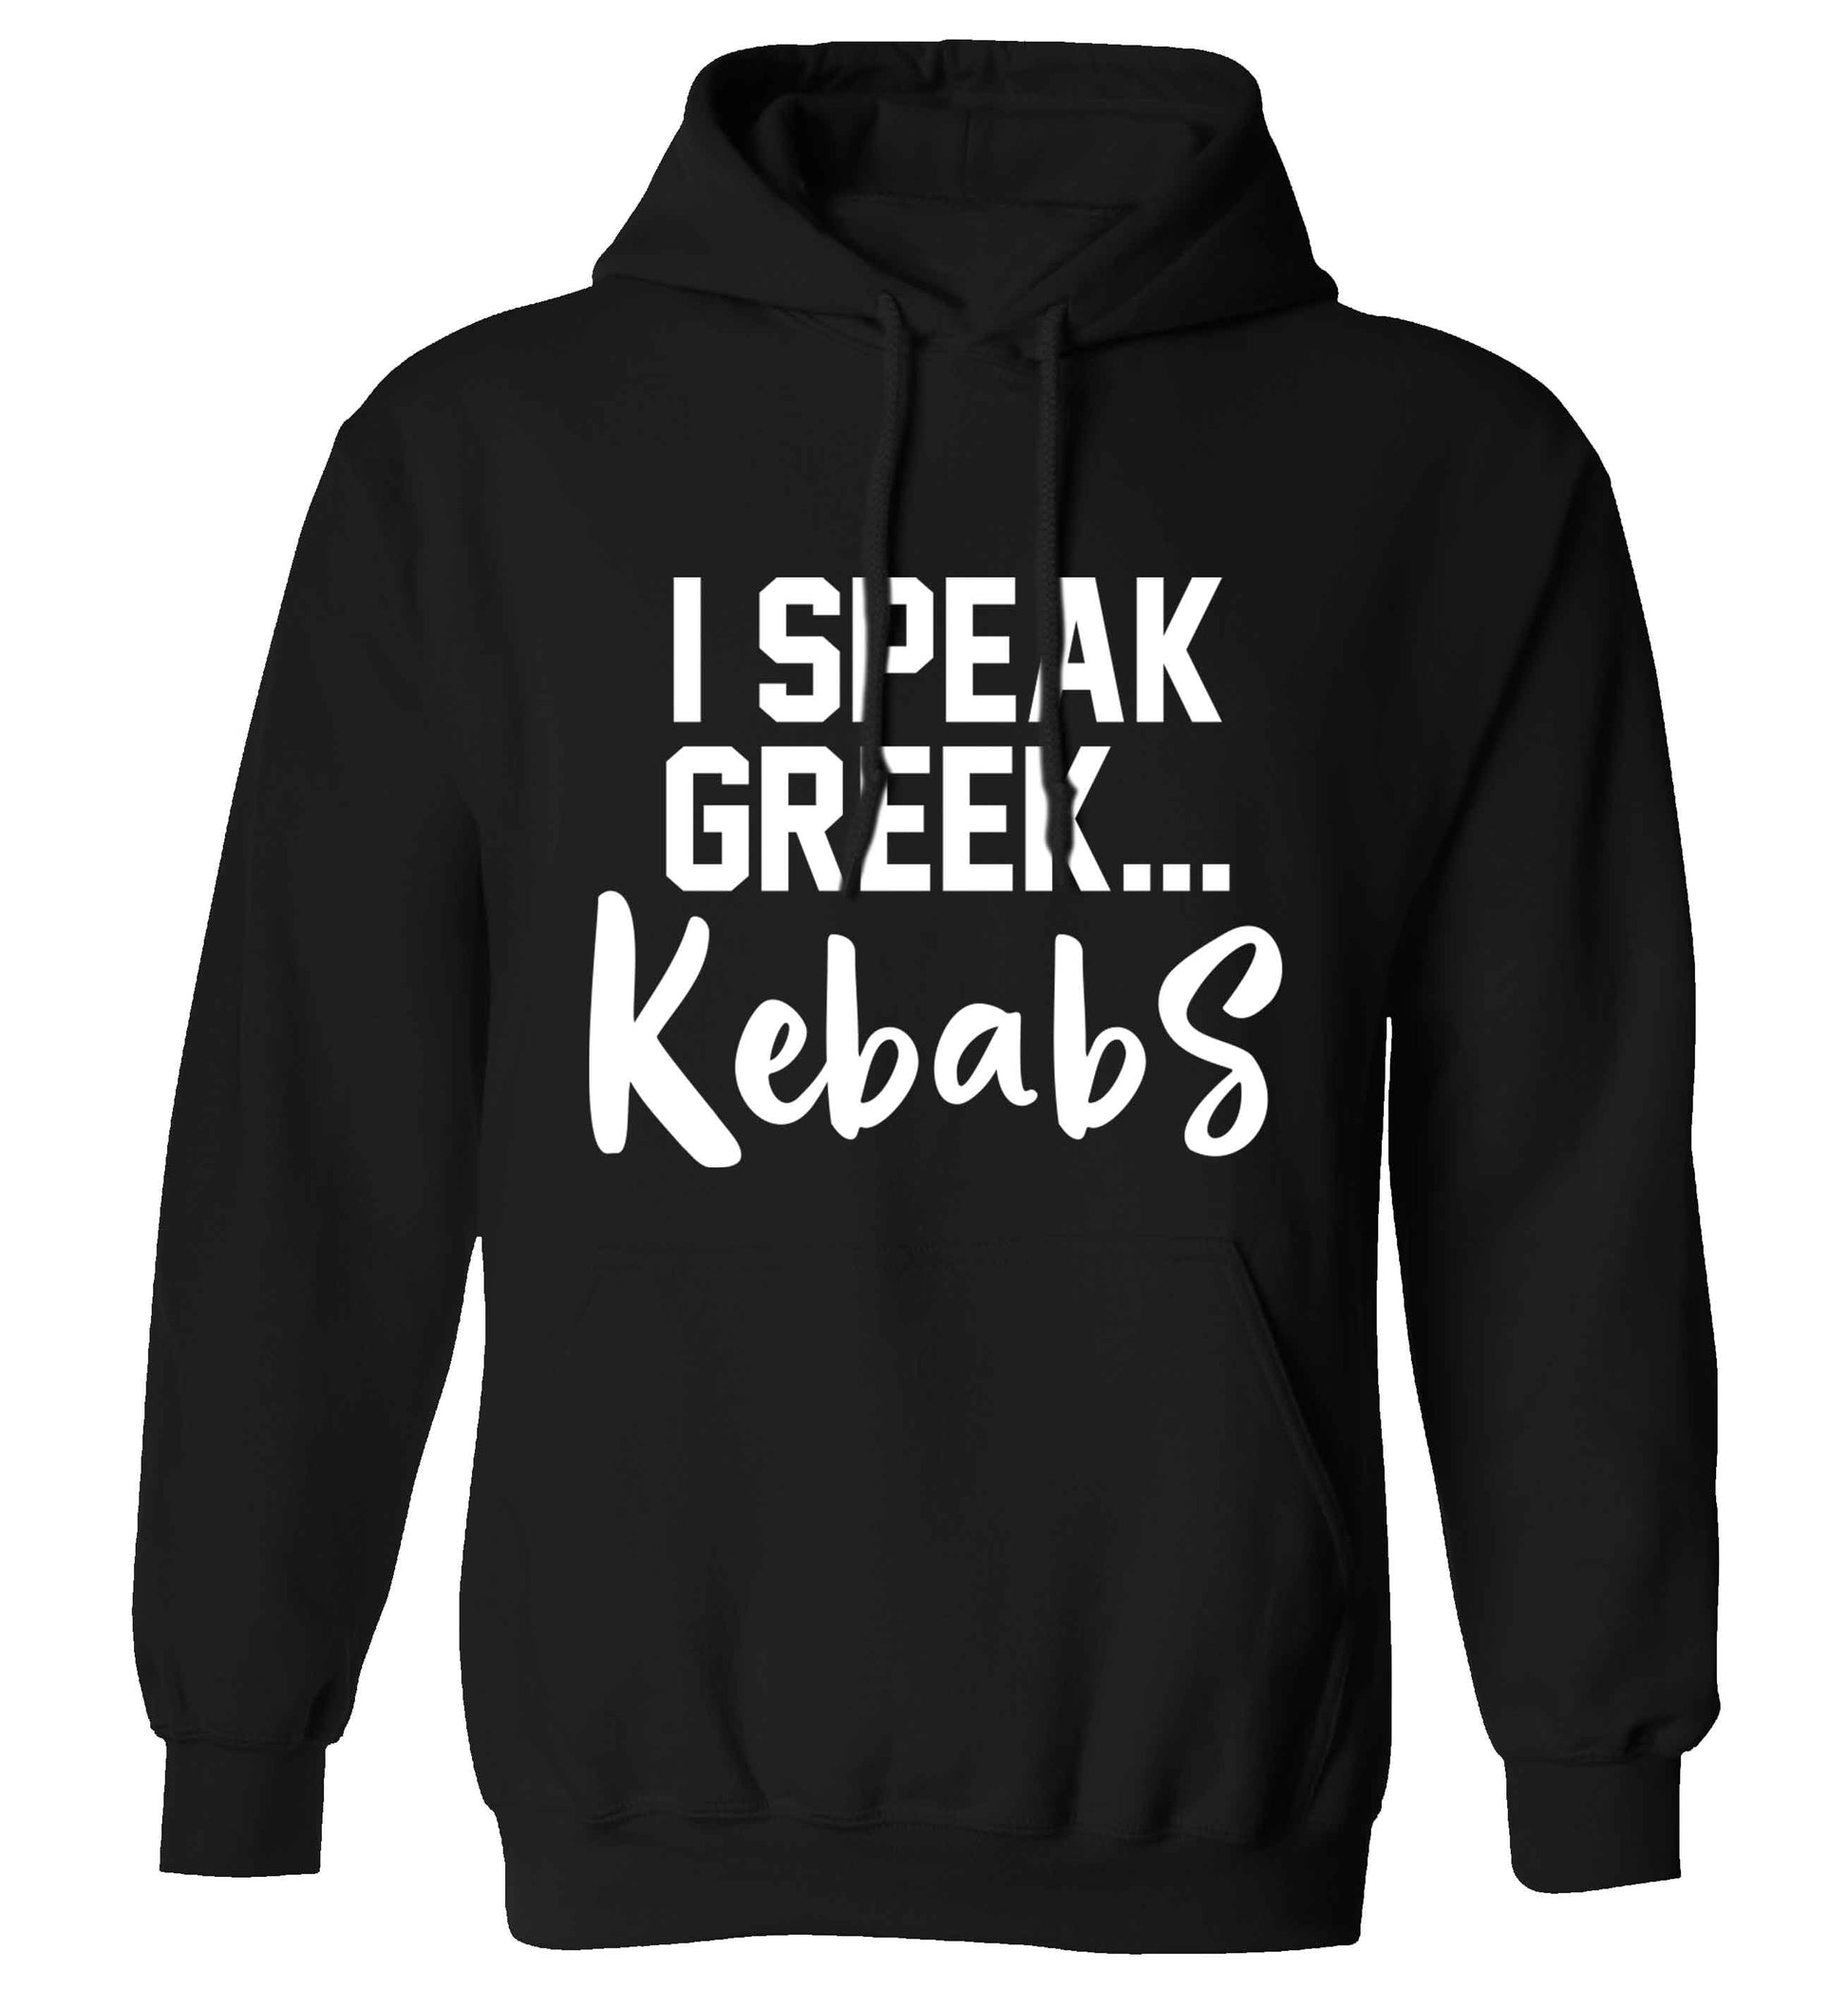 I speak Greek...kebabs adults unisex black hoodie 2XL